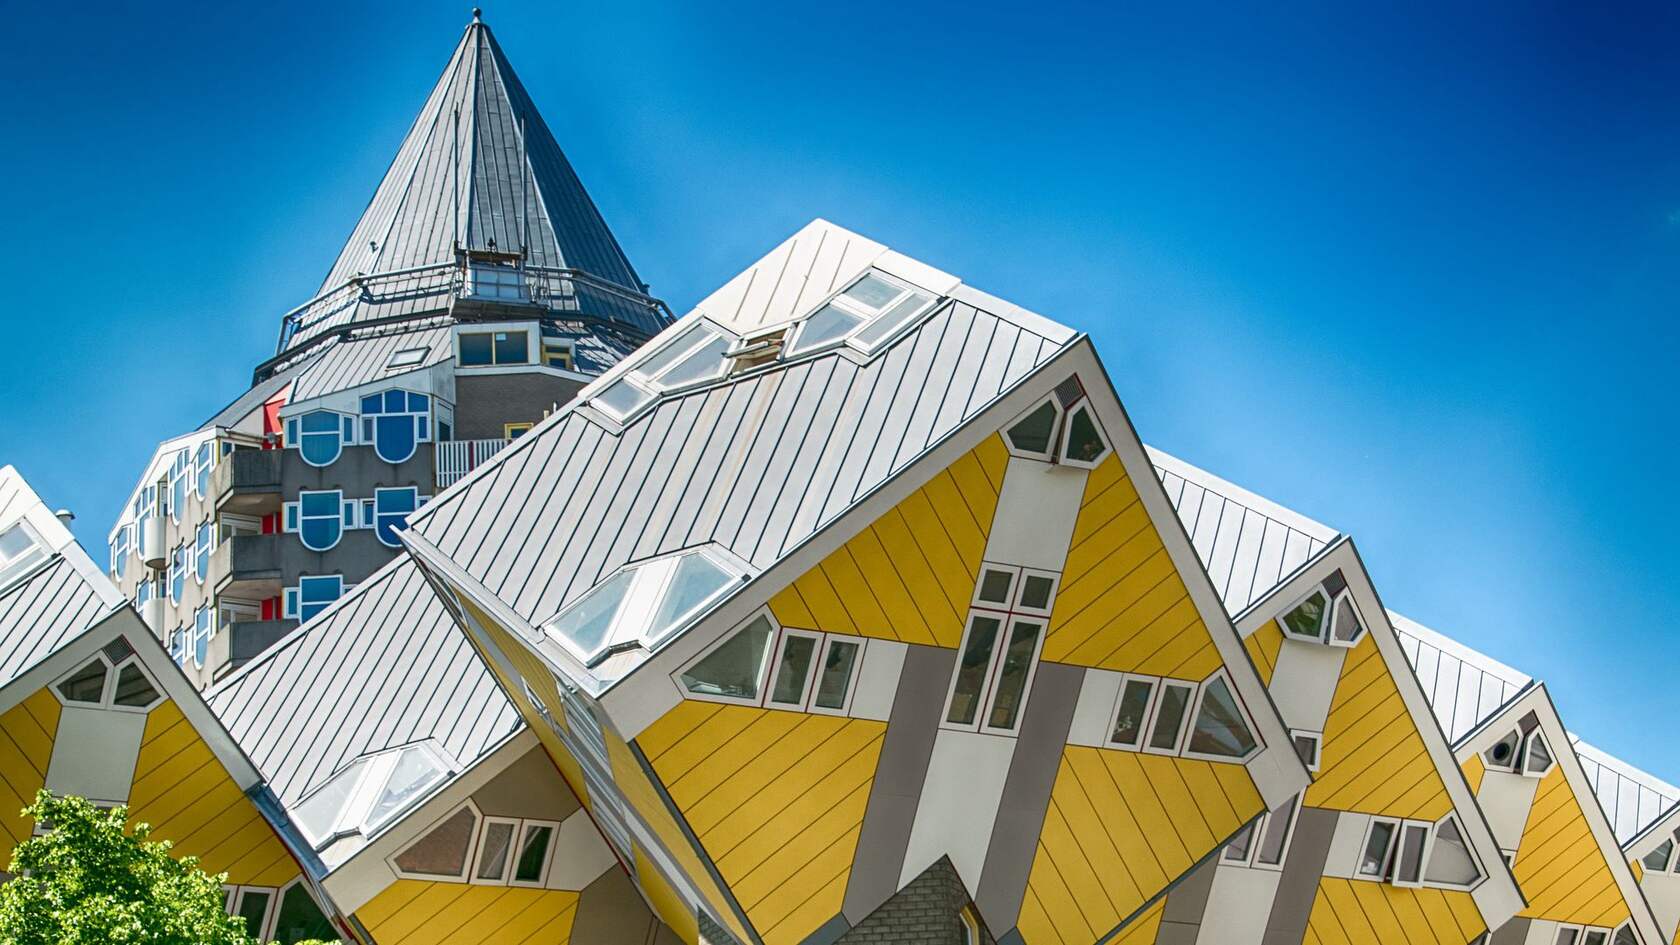 欧洲 荷兰 鹿特丹 创意 设计感十足的奇特立方体房子壁纸图片套图1